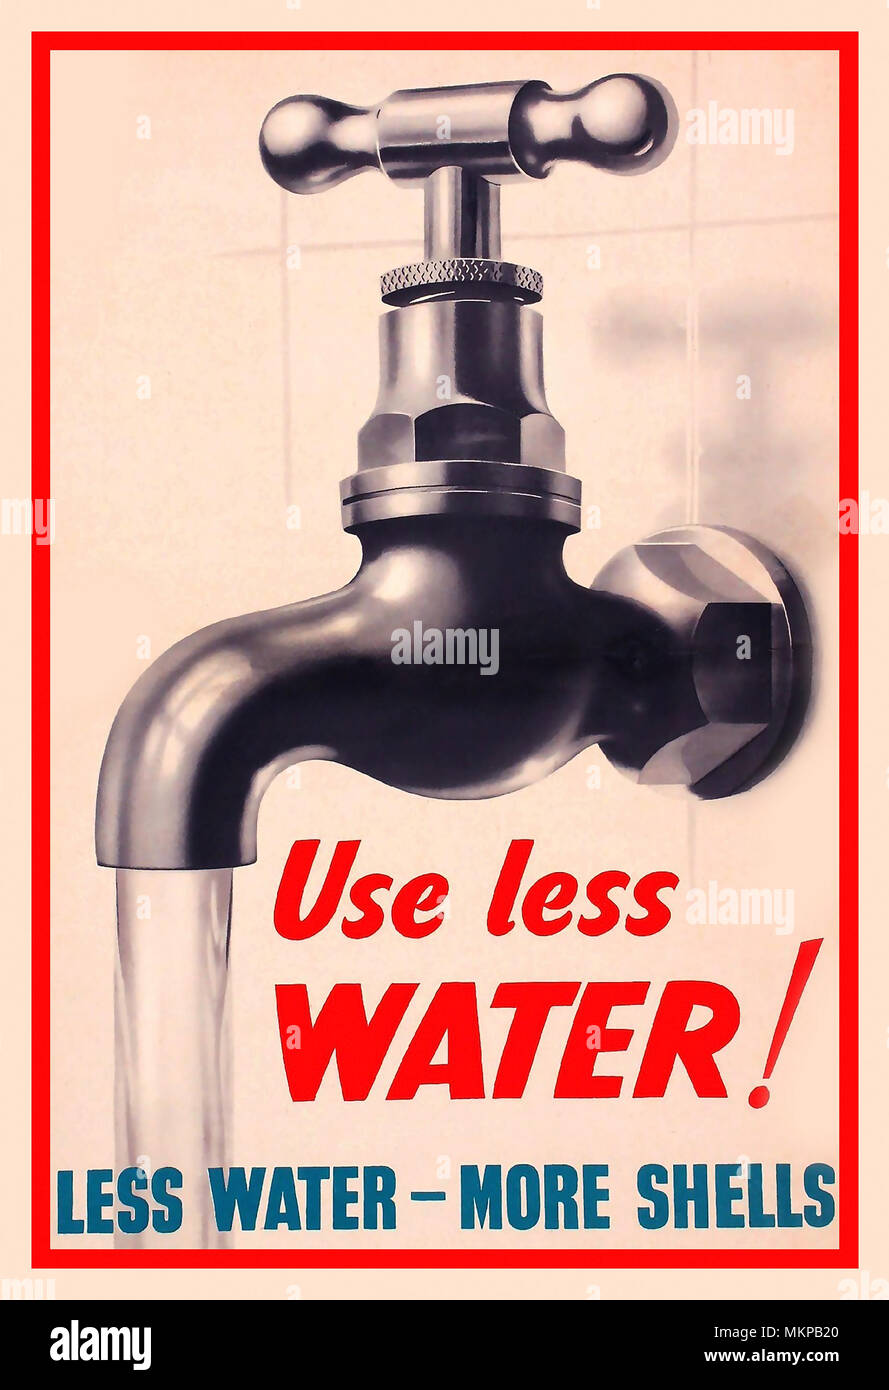 1940 affiche d'information de la propagande britannique 'Utiliser moins d'eau ! Moins d'eau - plus original des obus WW2 Accueil/poster imprimé pour HMSO par J Weiner vers 1940 Banque D'Images